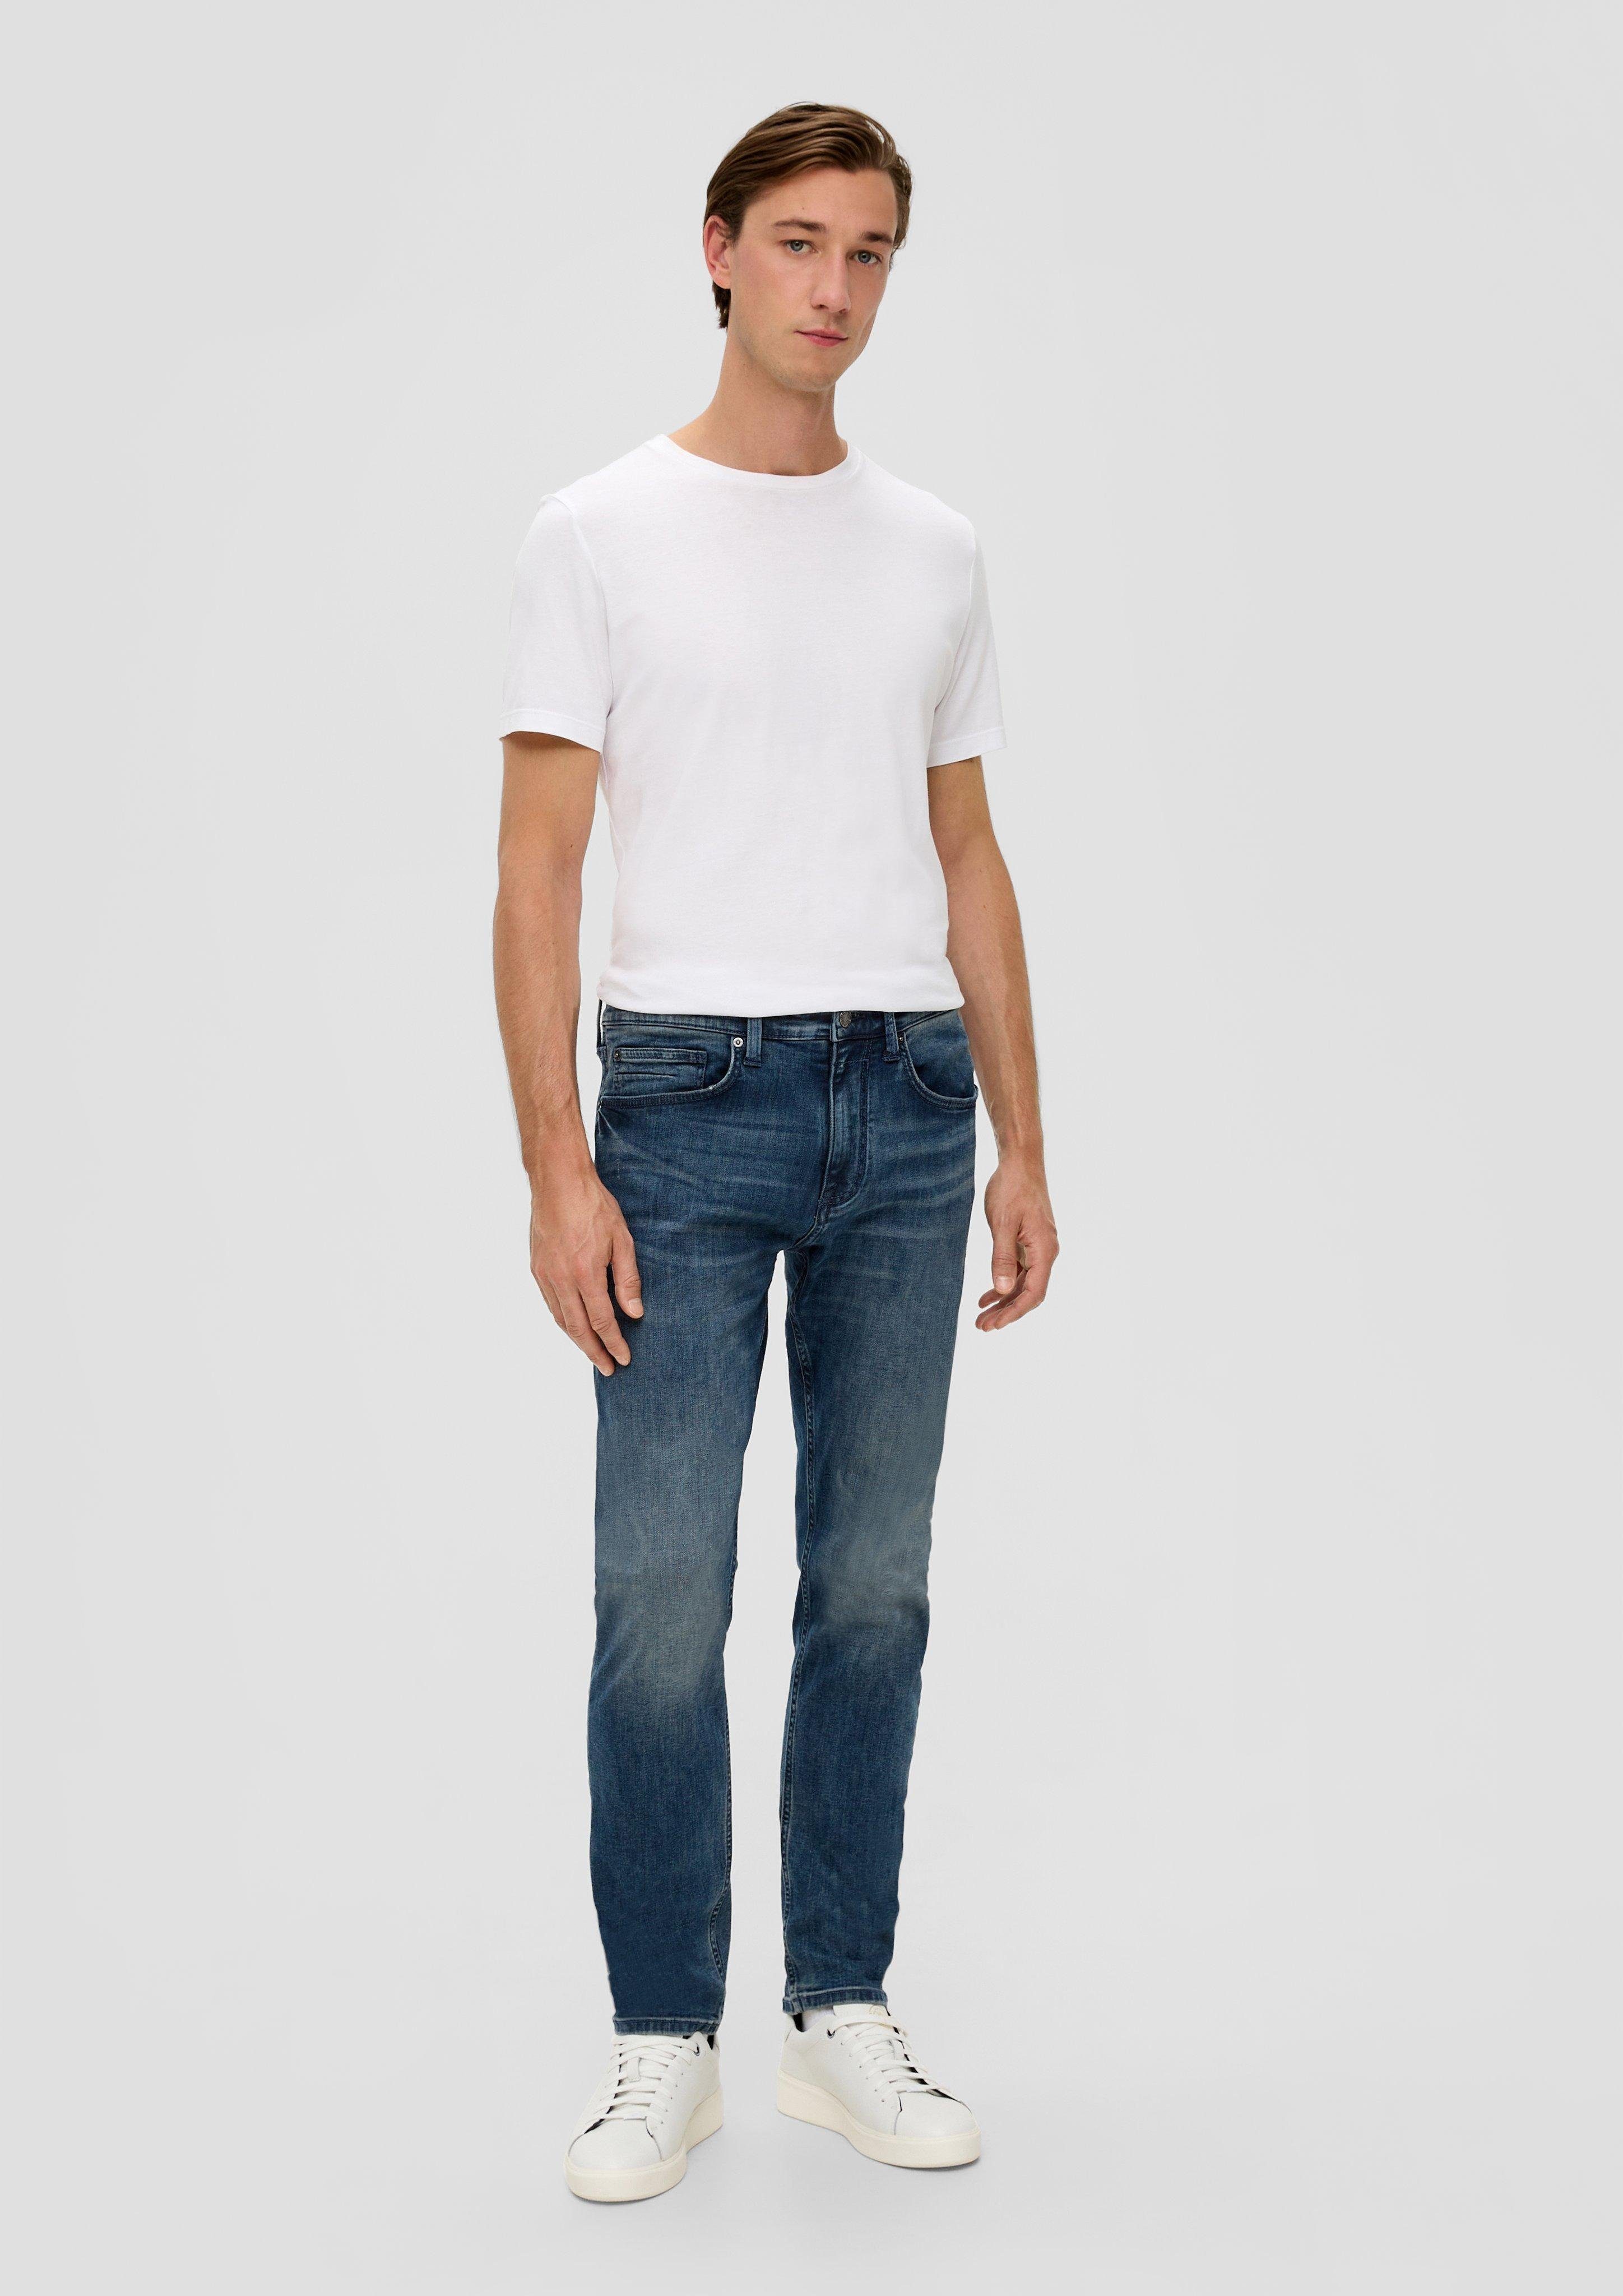 Jeans / Stoffhose Rise dunkelblau Tapered Leg Mid 5-Pocket-Stil Regular / / Waschung Fit Leder-Patch, / s.Oliver